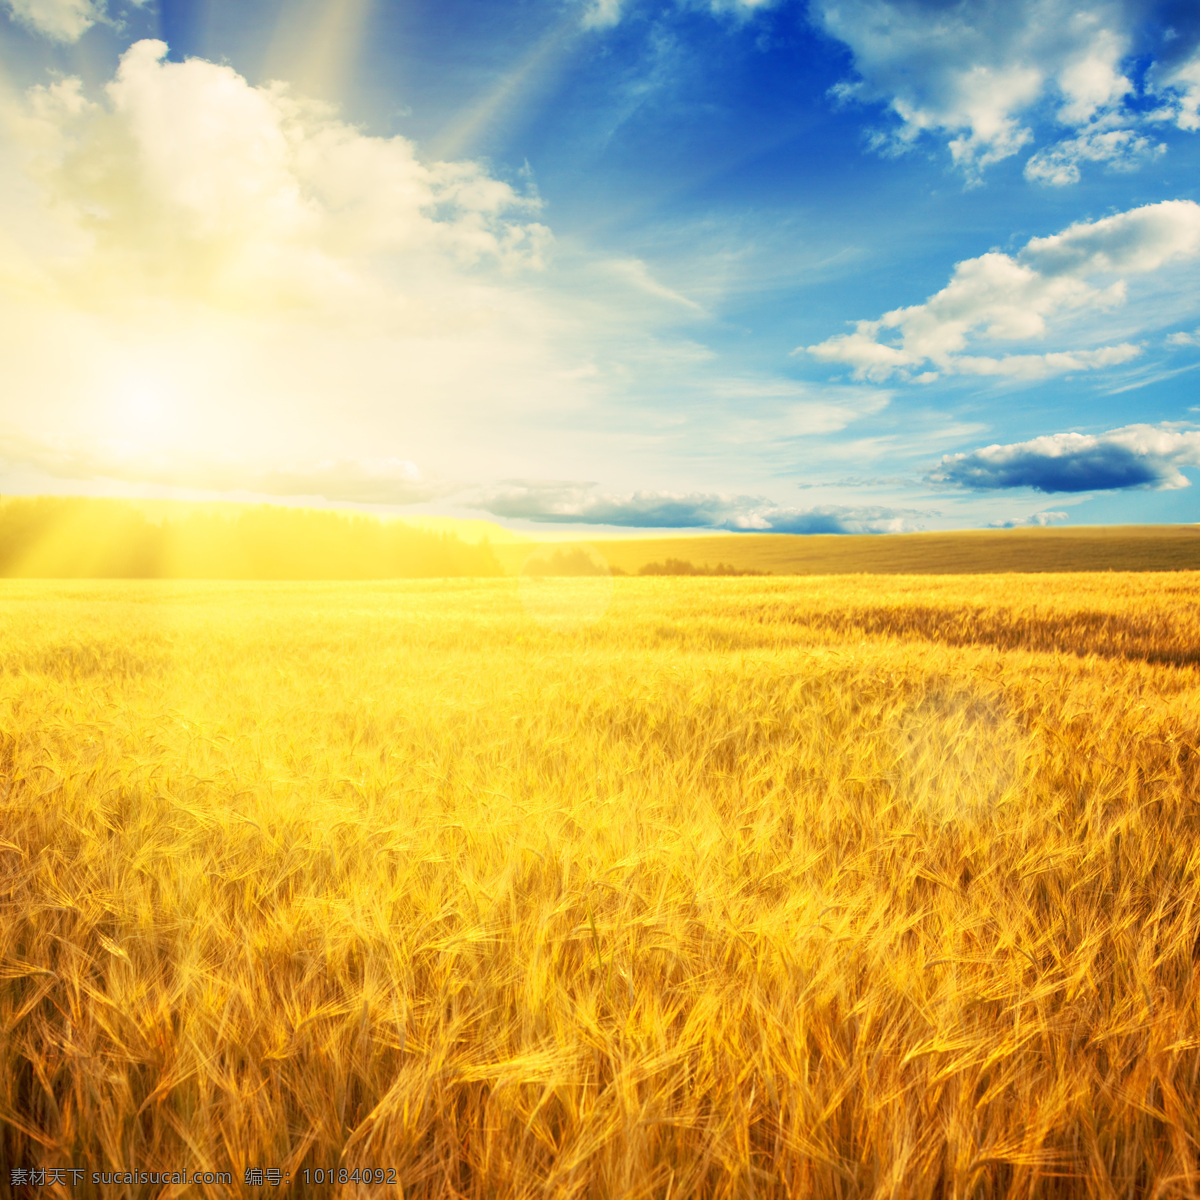 金黄的麦田 秋天 秋季 天空 蓝天 白云 太阳 阳光 小麦 麦穗 麦子 丰收 美丽景色 乡村风景 野外风景 自然风景 生态环境 自然景观